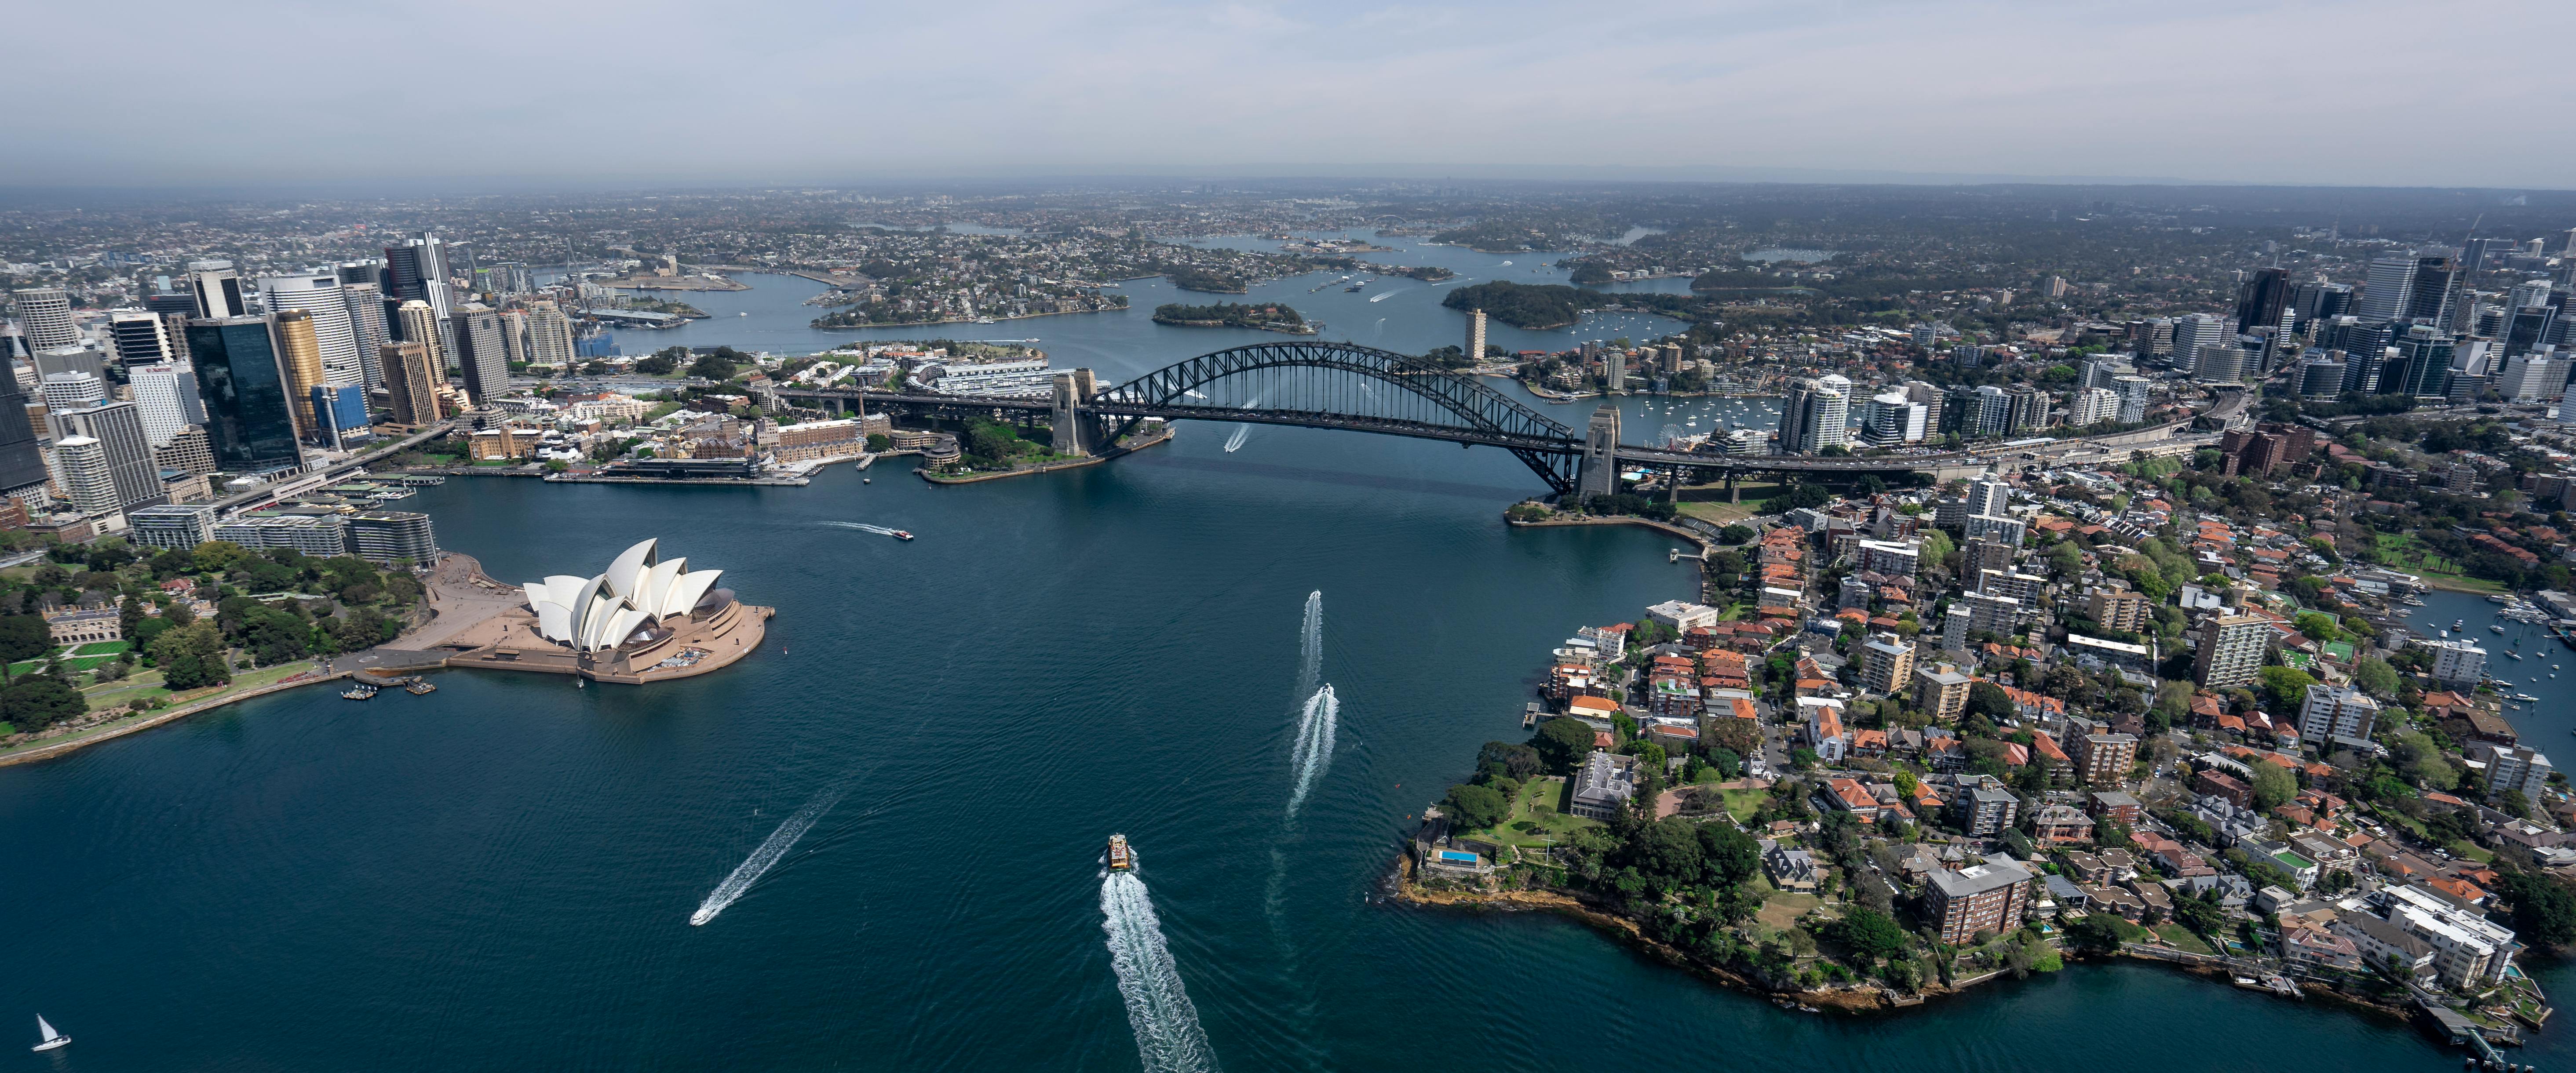 Recorre Australia para vivir una experiencia de verano inolvidable 
Sydney desde $112